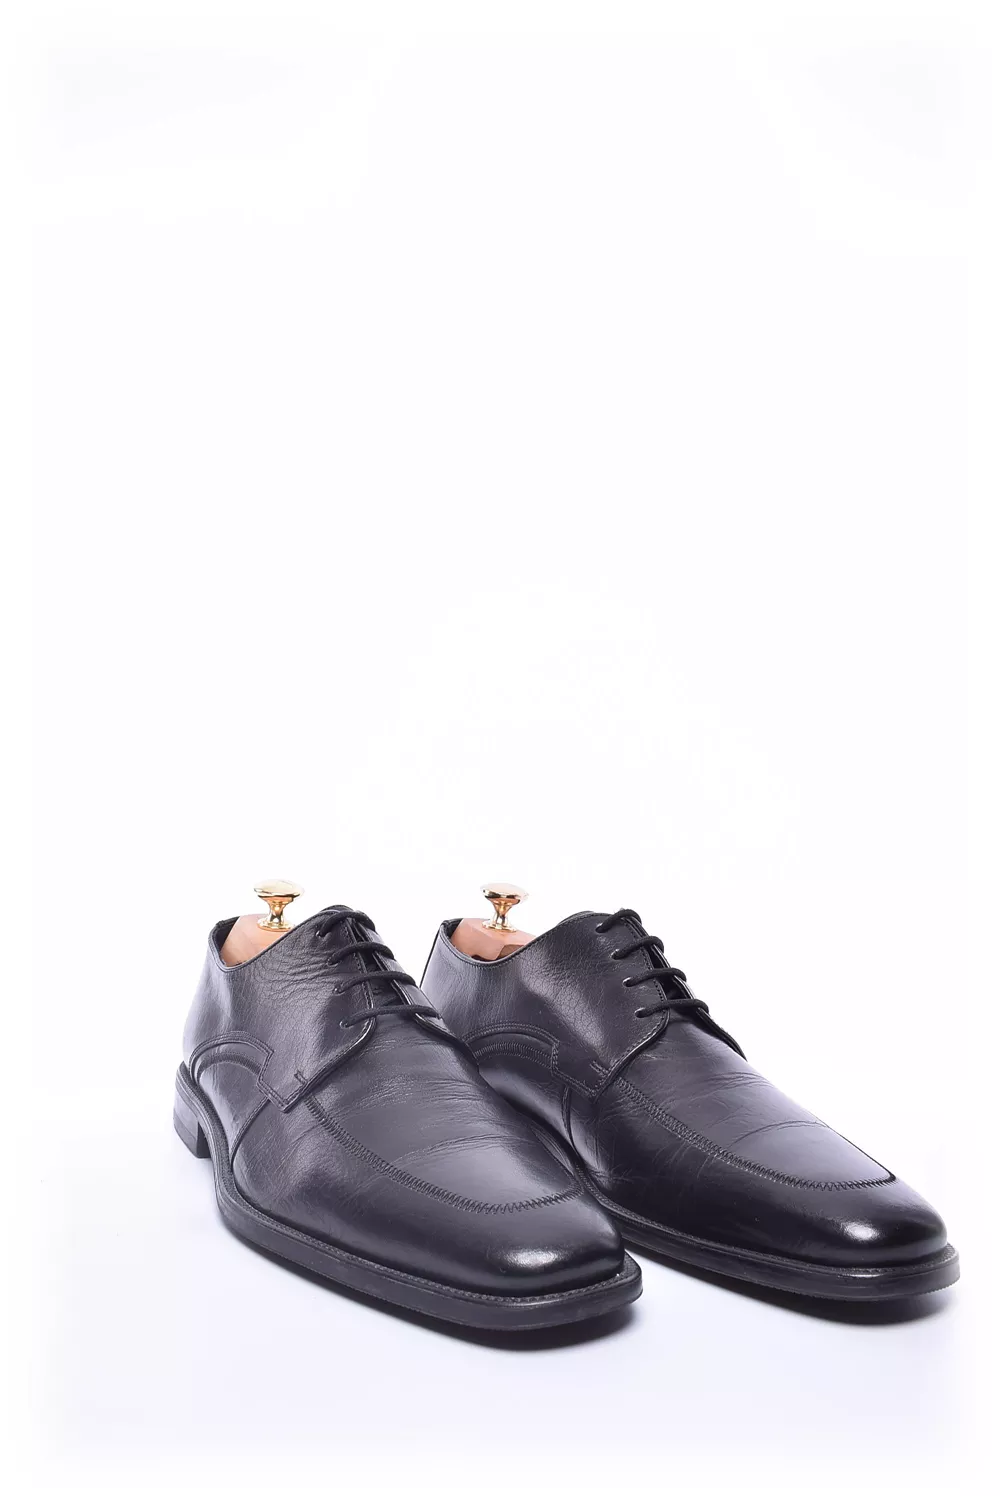 Pantofi barbati [3]